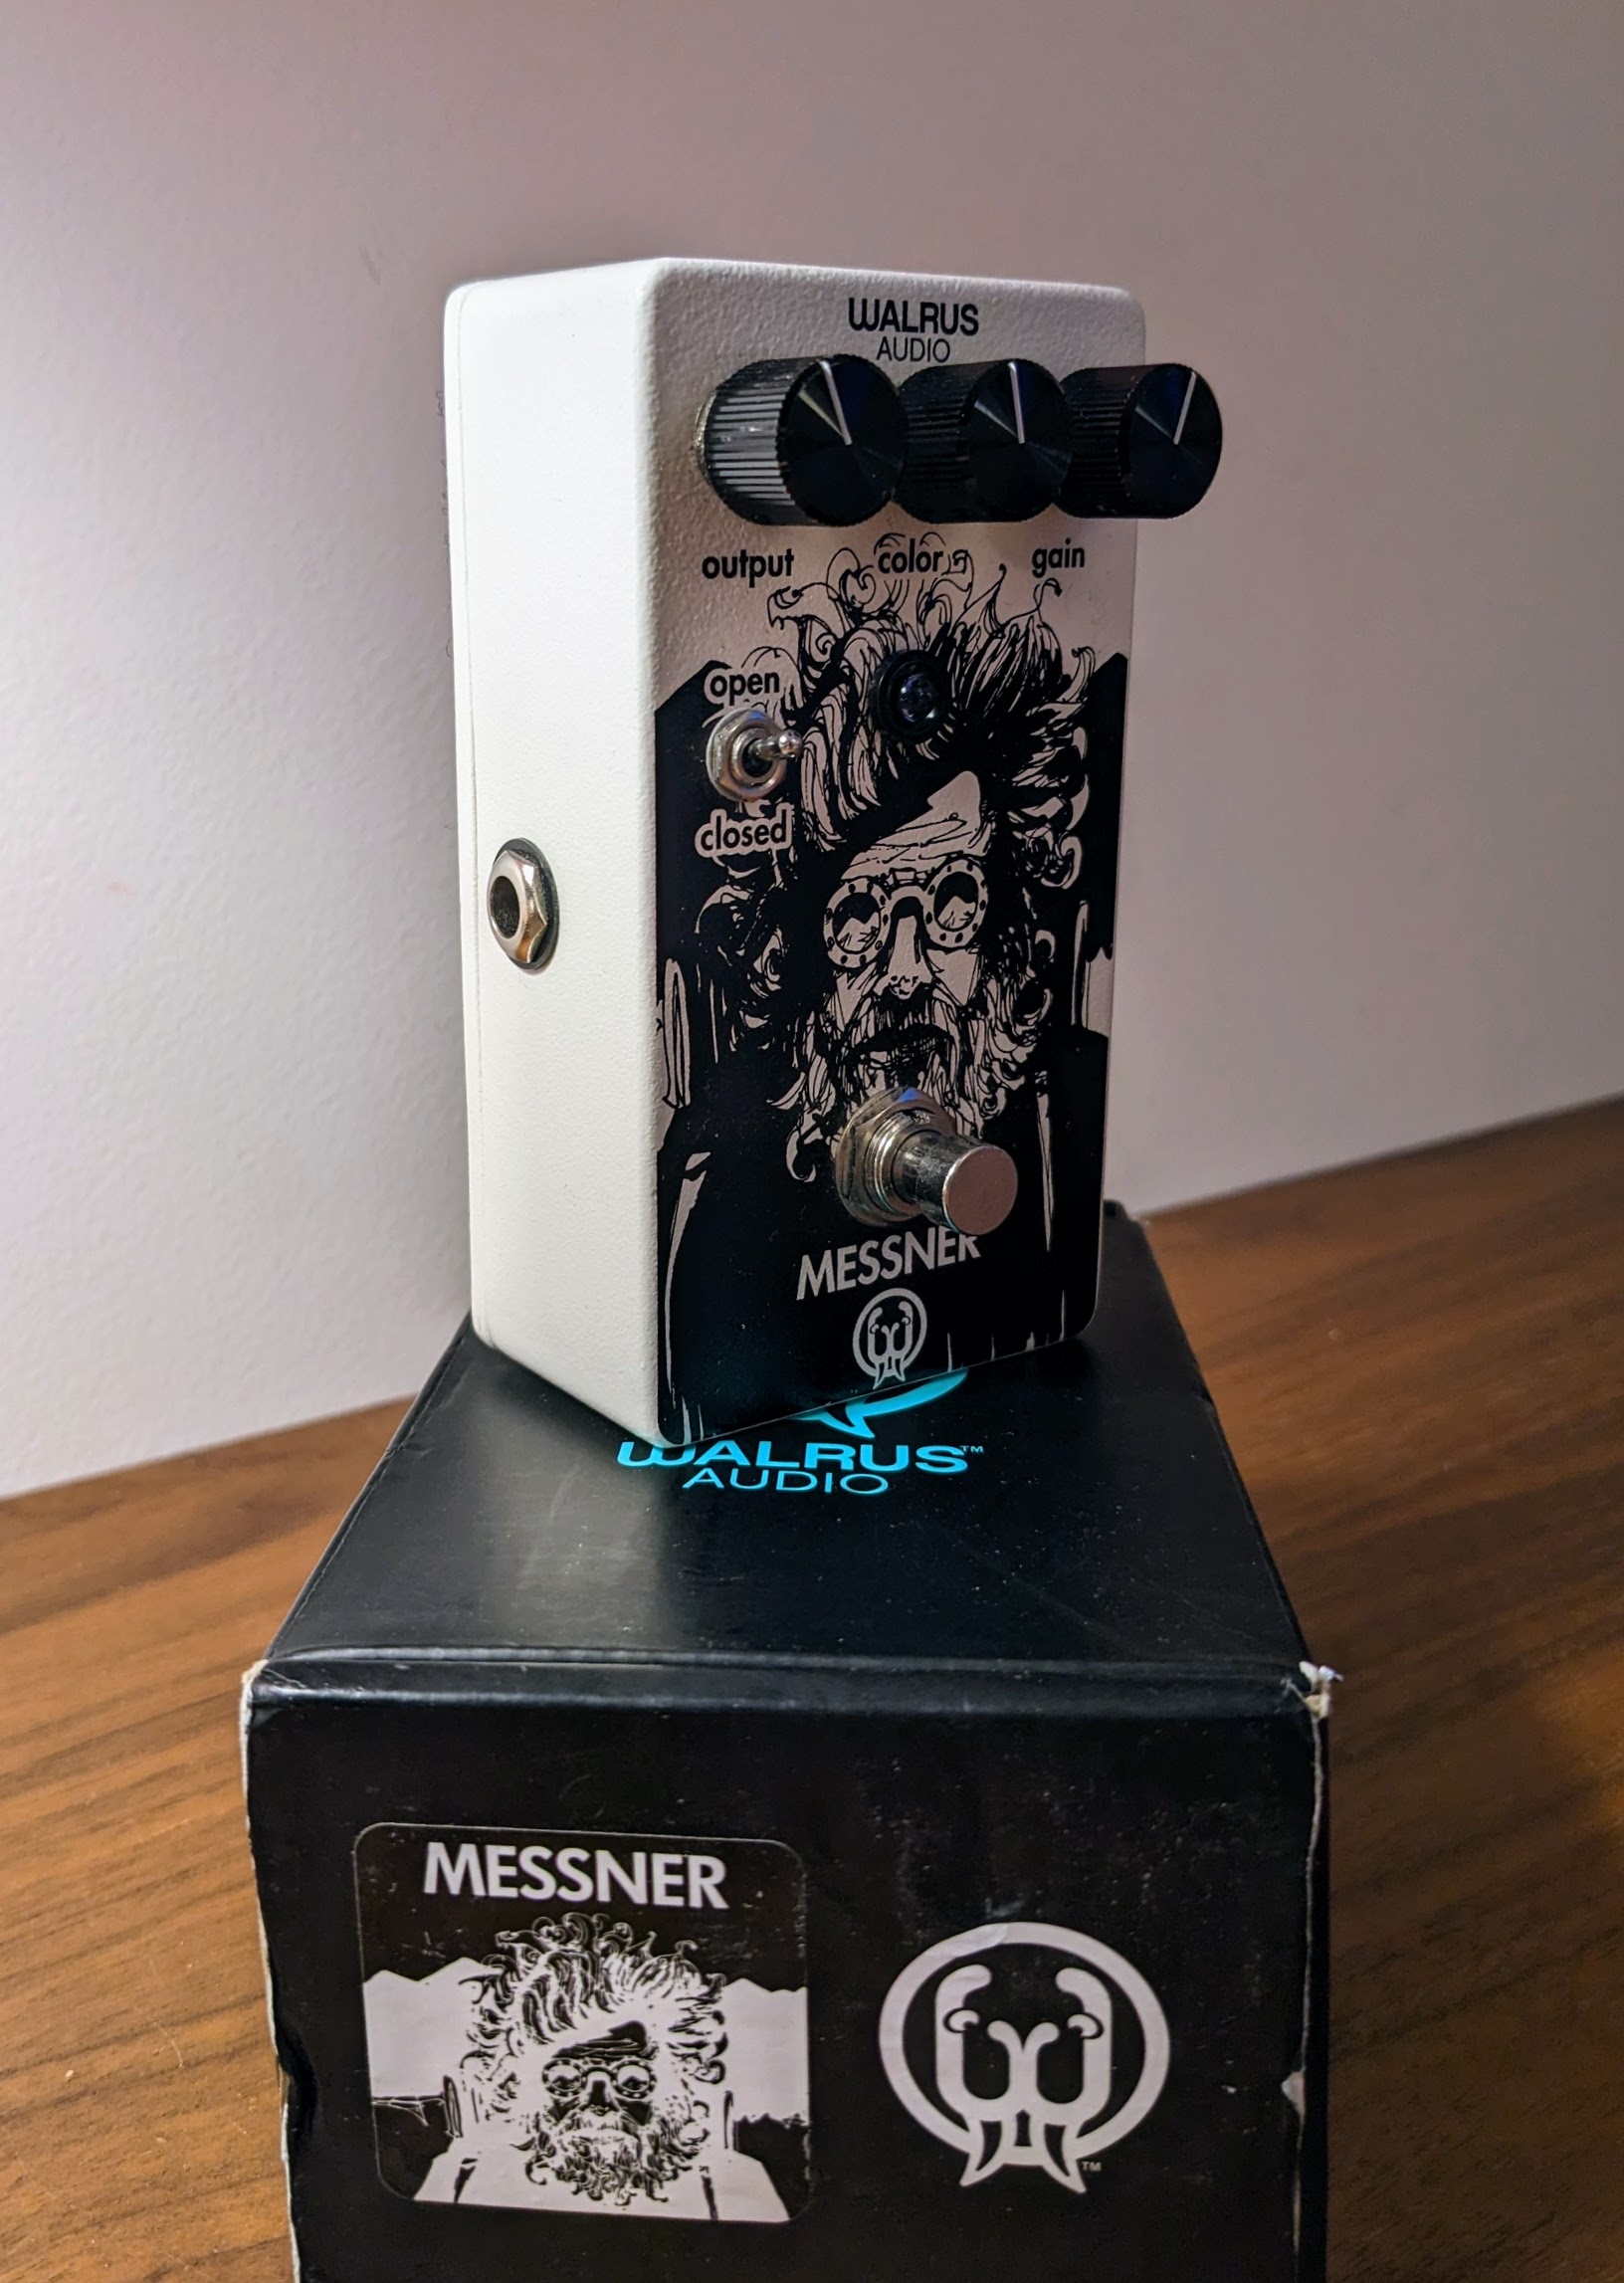 Messner - Walrus Audio Messner - Audiofanzine